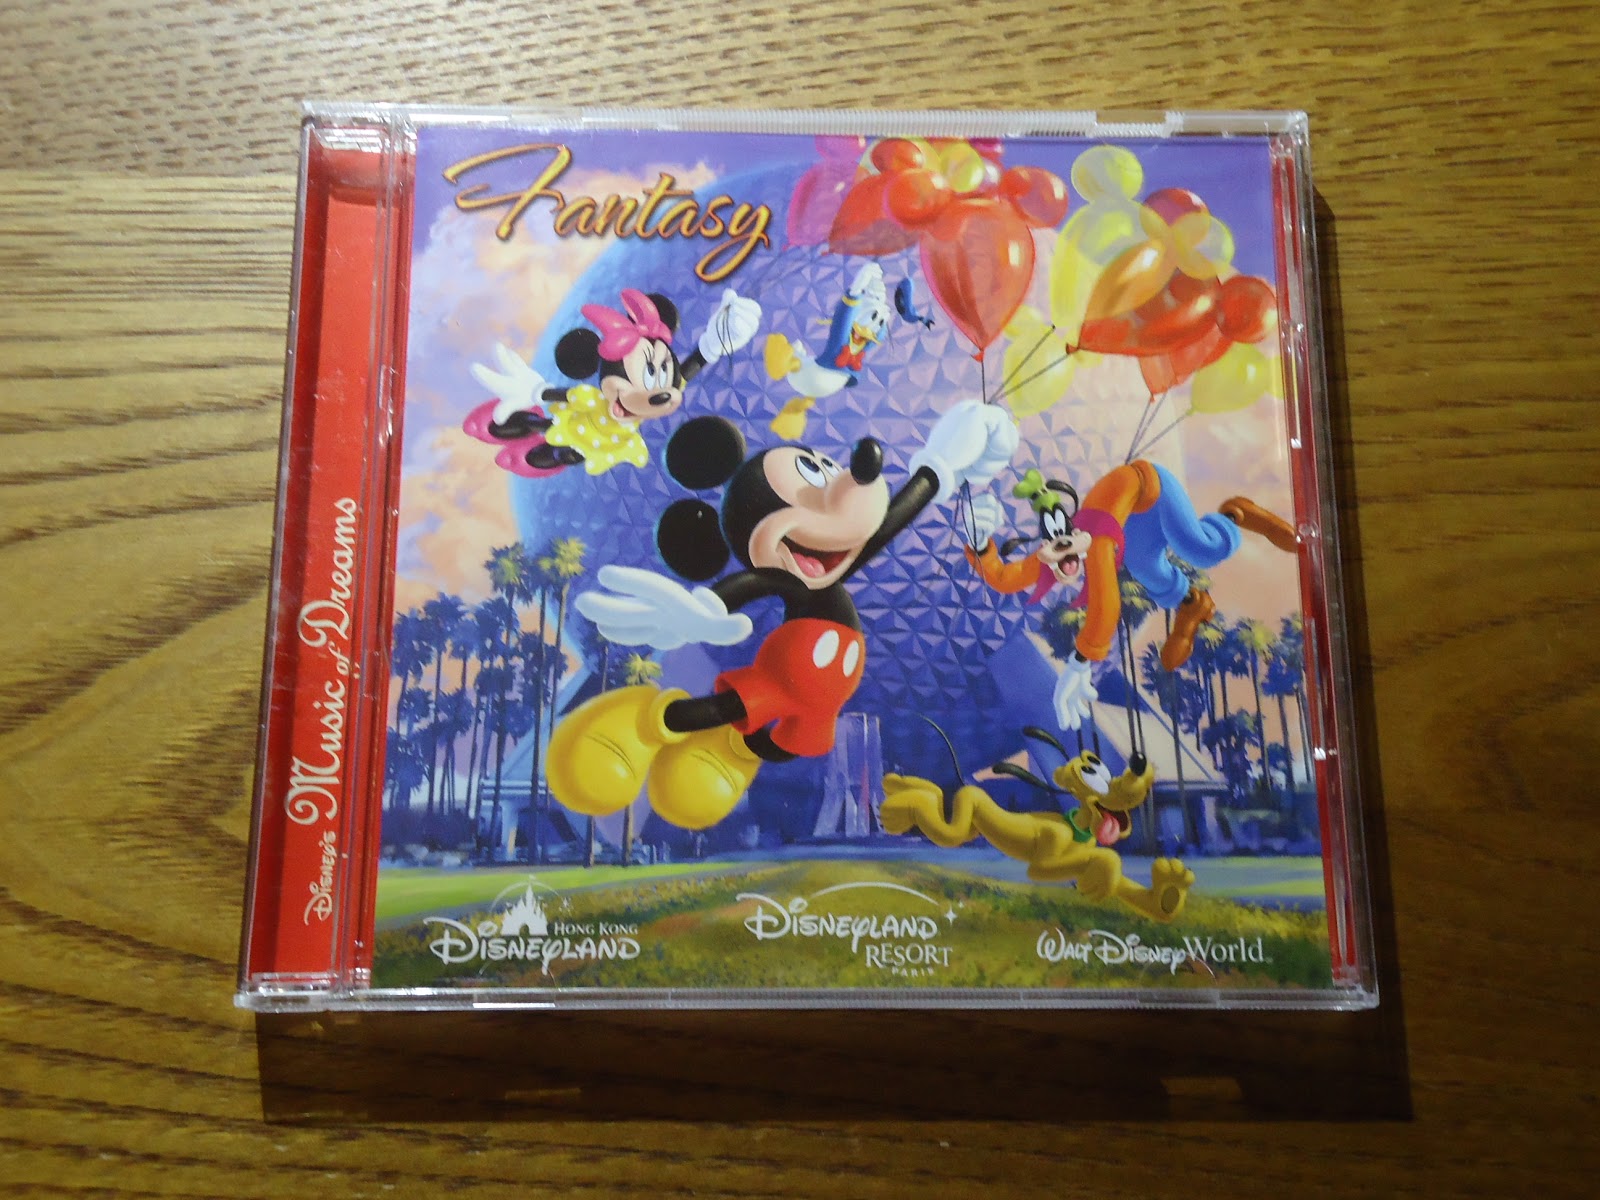 即決cd ディズニーミュージックタウン Disney S M06 Music Town そりすべり もろびとこぞりて アルバム クリスマス ジングル ベル 新作 人気 クリスマス